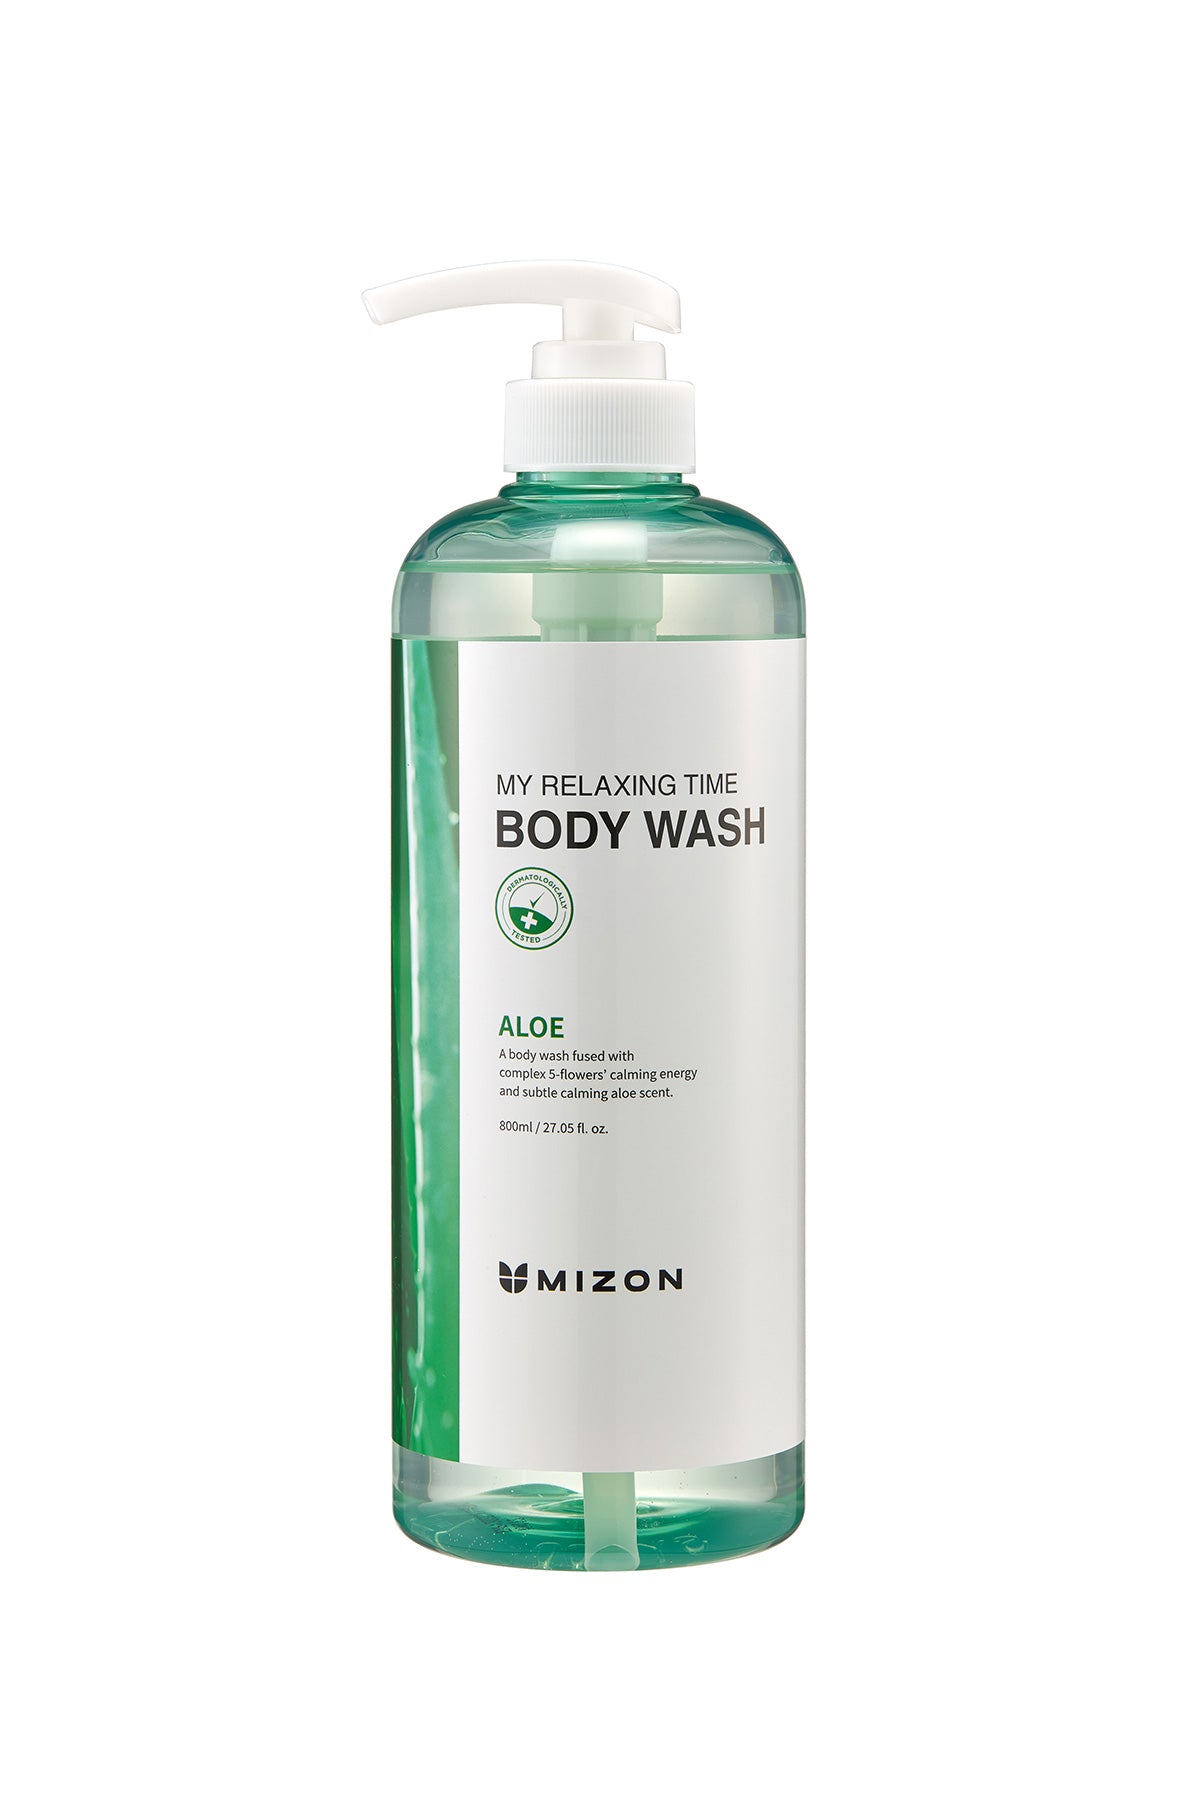 Mizon My Relaxing Time Body Wash Aloe - Rahatlatıcı Aloe Özlü Duş Jeli